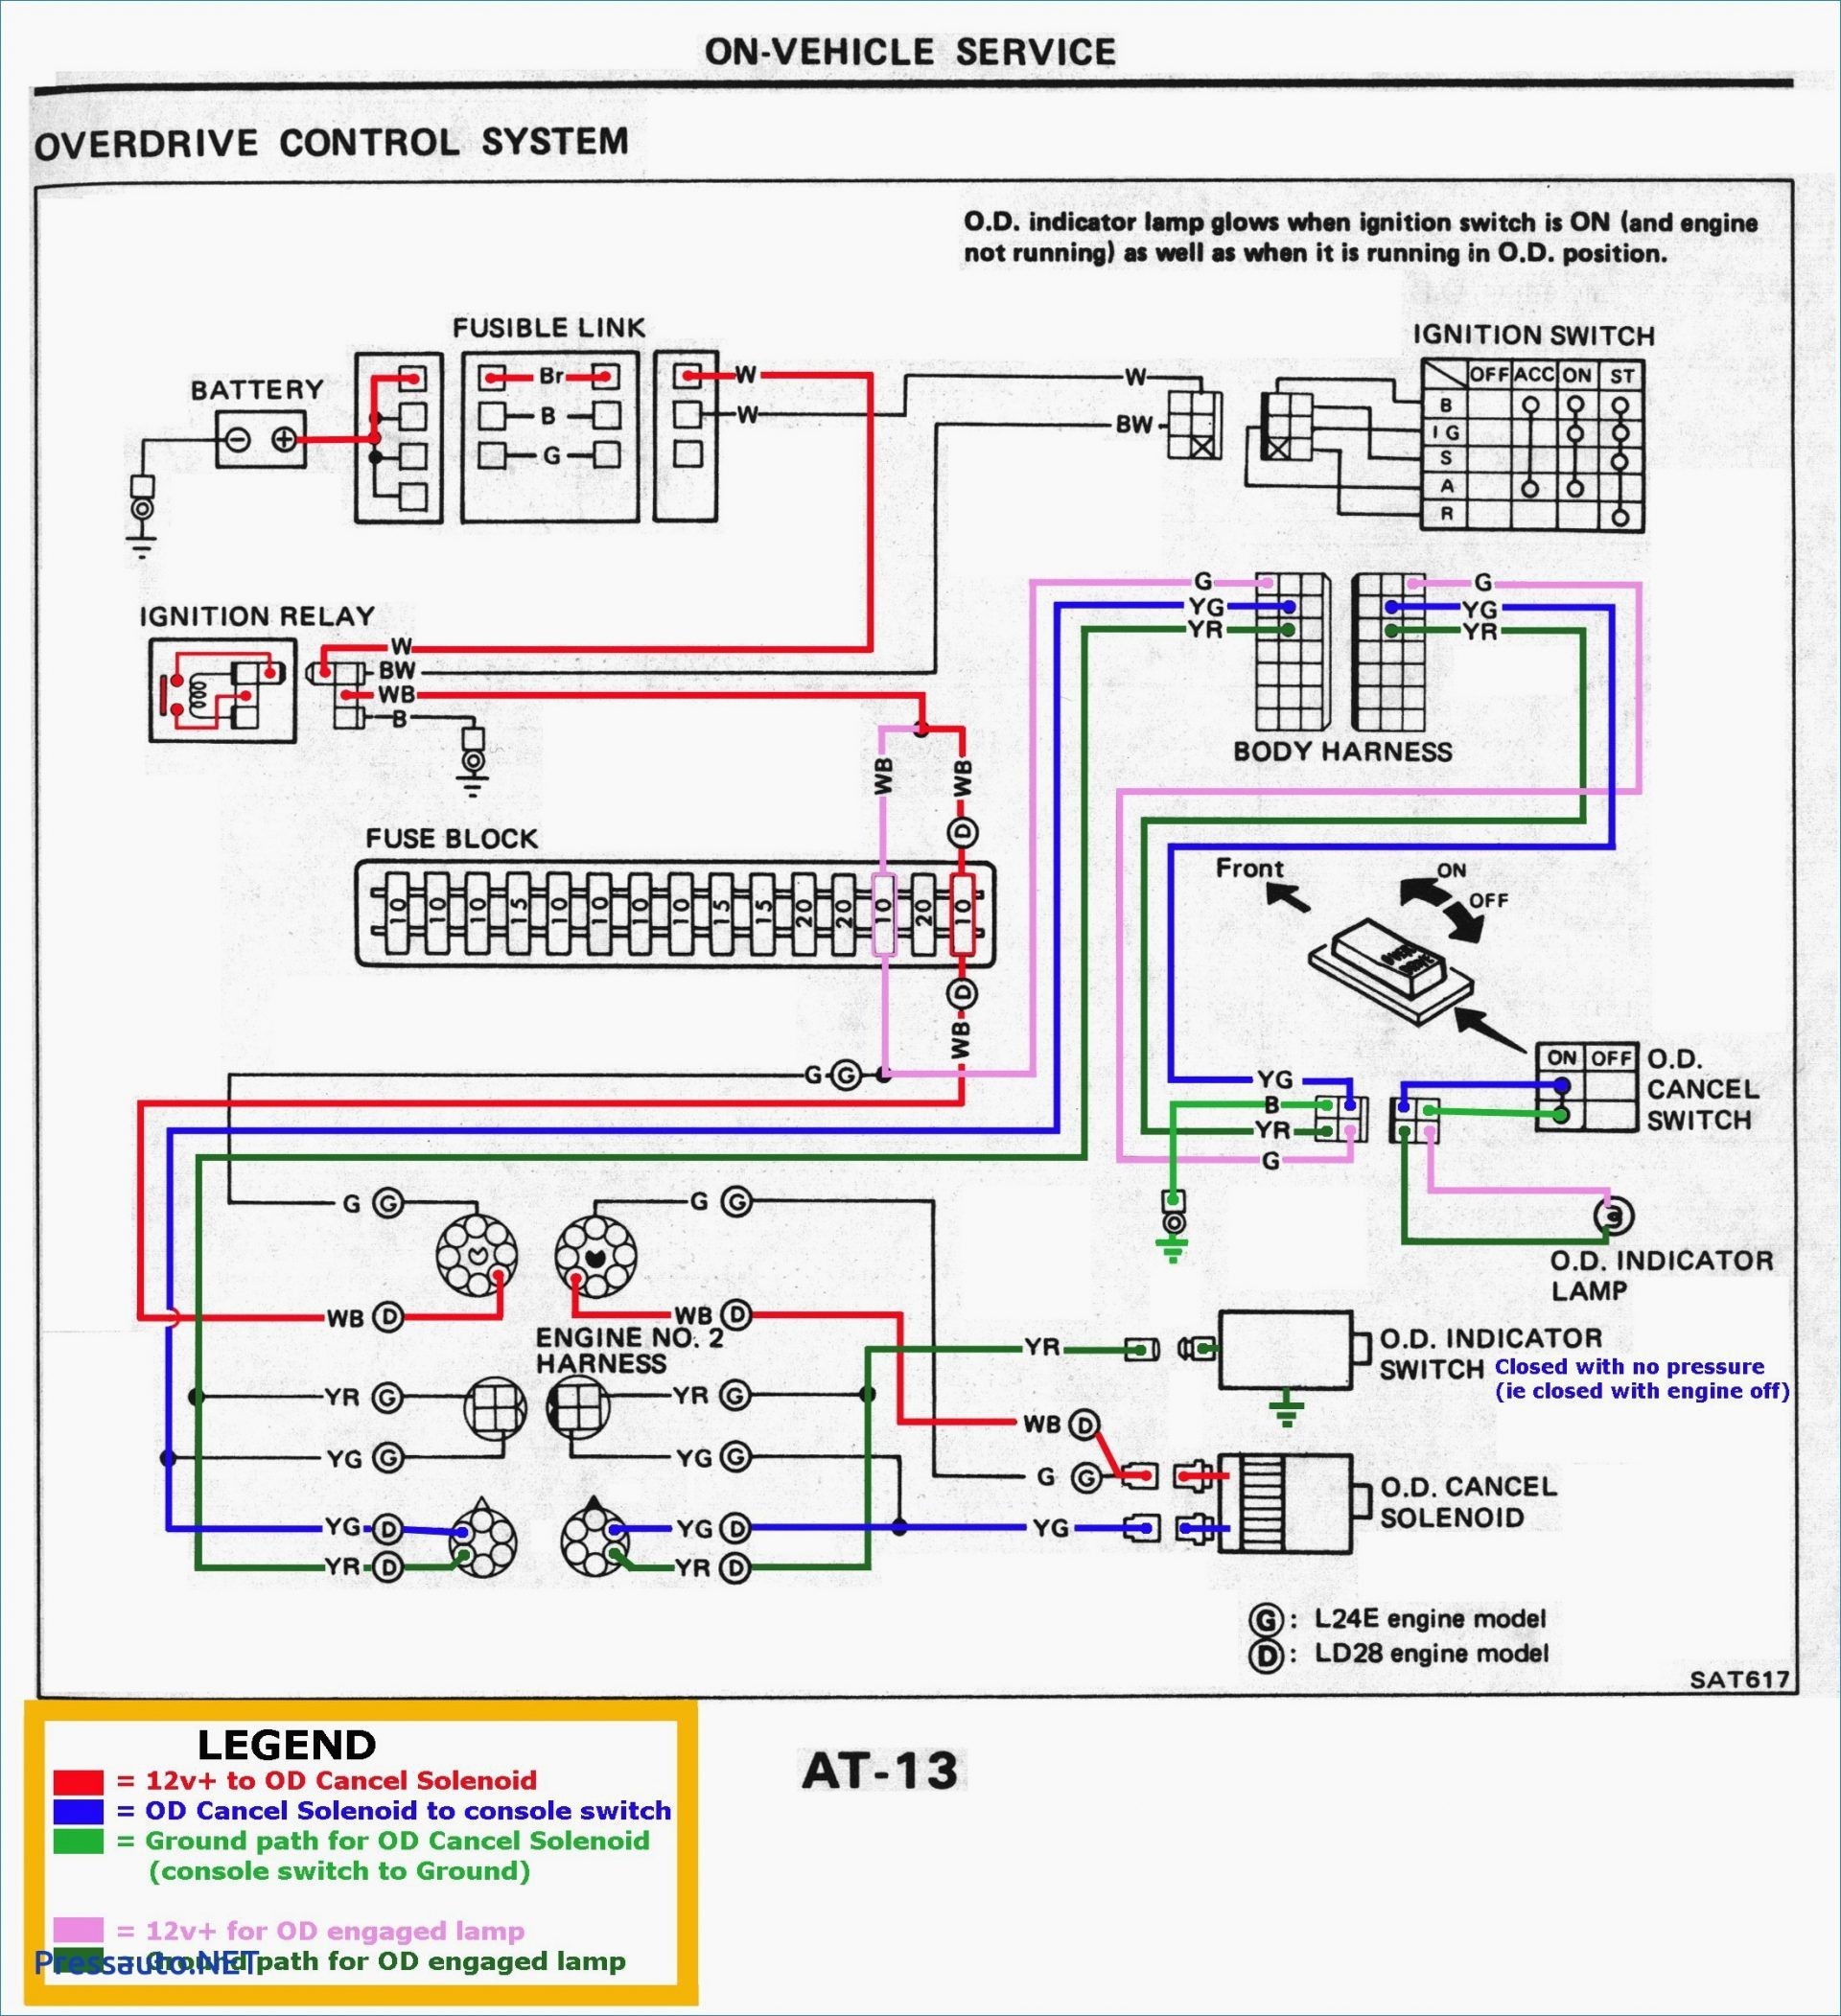 2002 Pontiac Grand Am Engine Diagram 2002 Pontiac Grand Prix Wiring Diagram Best Wiring Diagram Of 2002 Pontiac Grand Am Engine Diagram